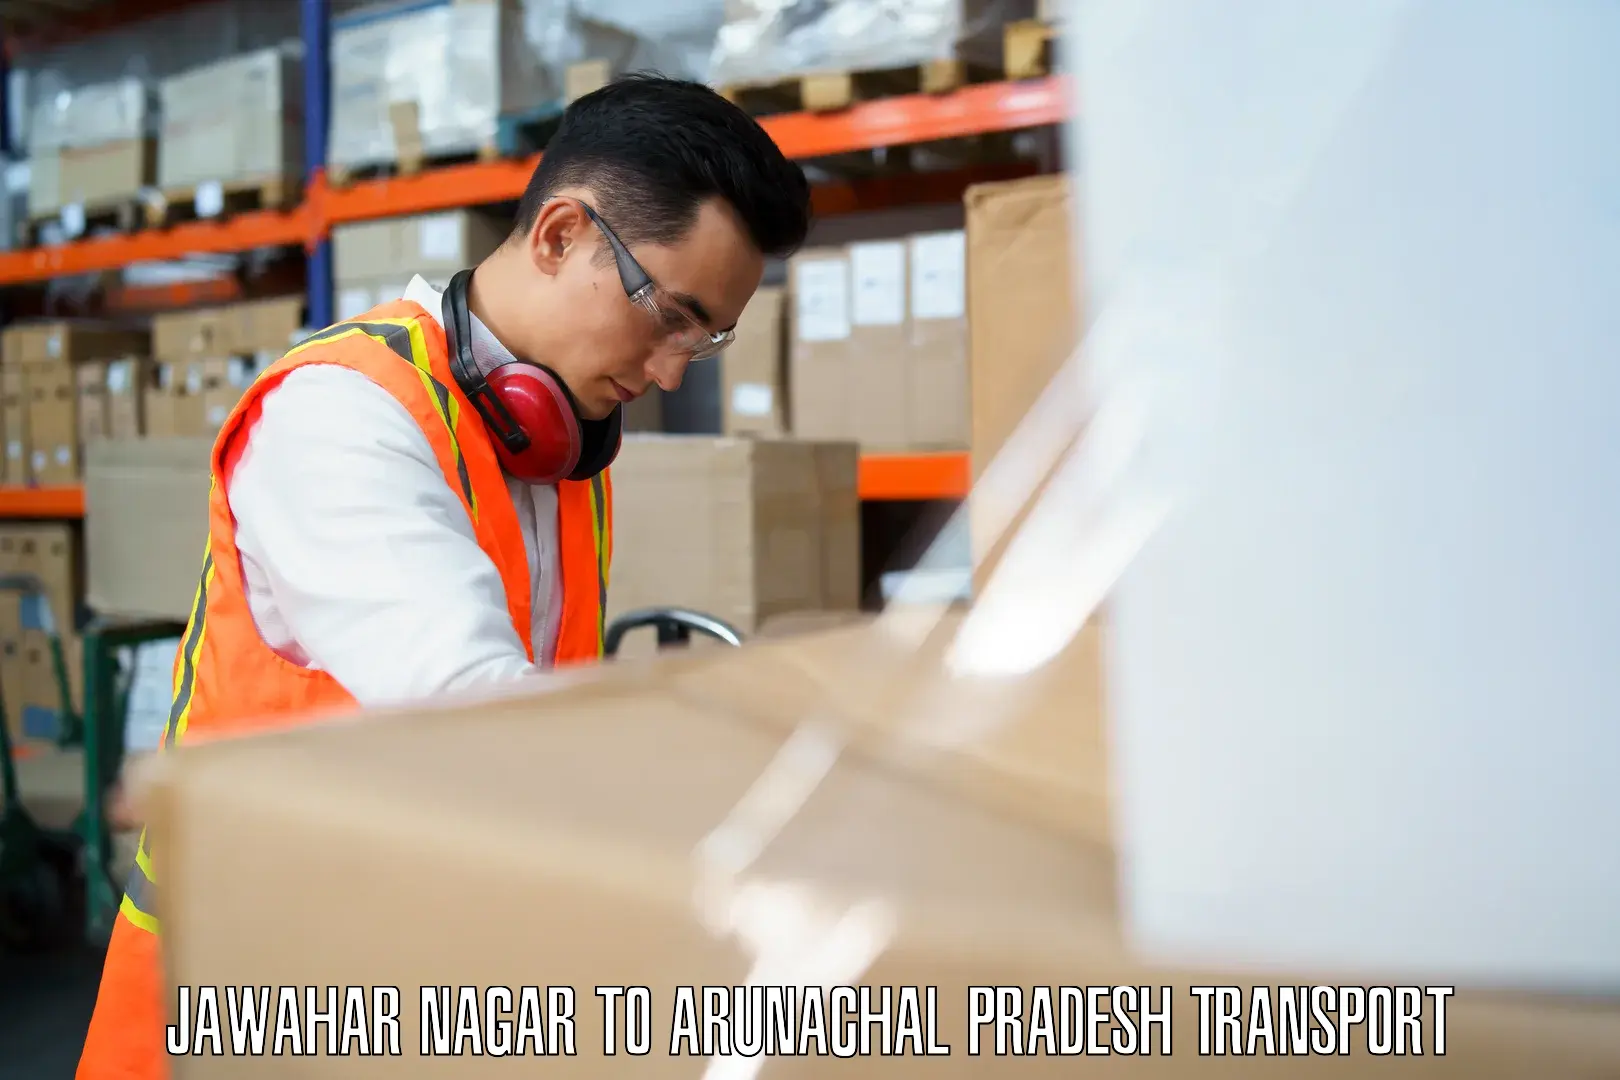 Pick up transport service Jawahar Nagar to Arunachal Pradesh